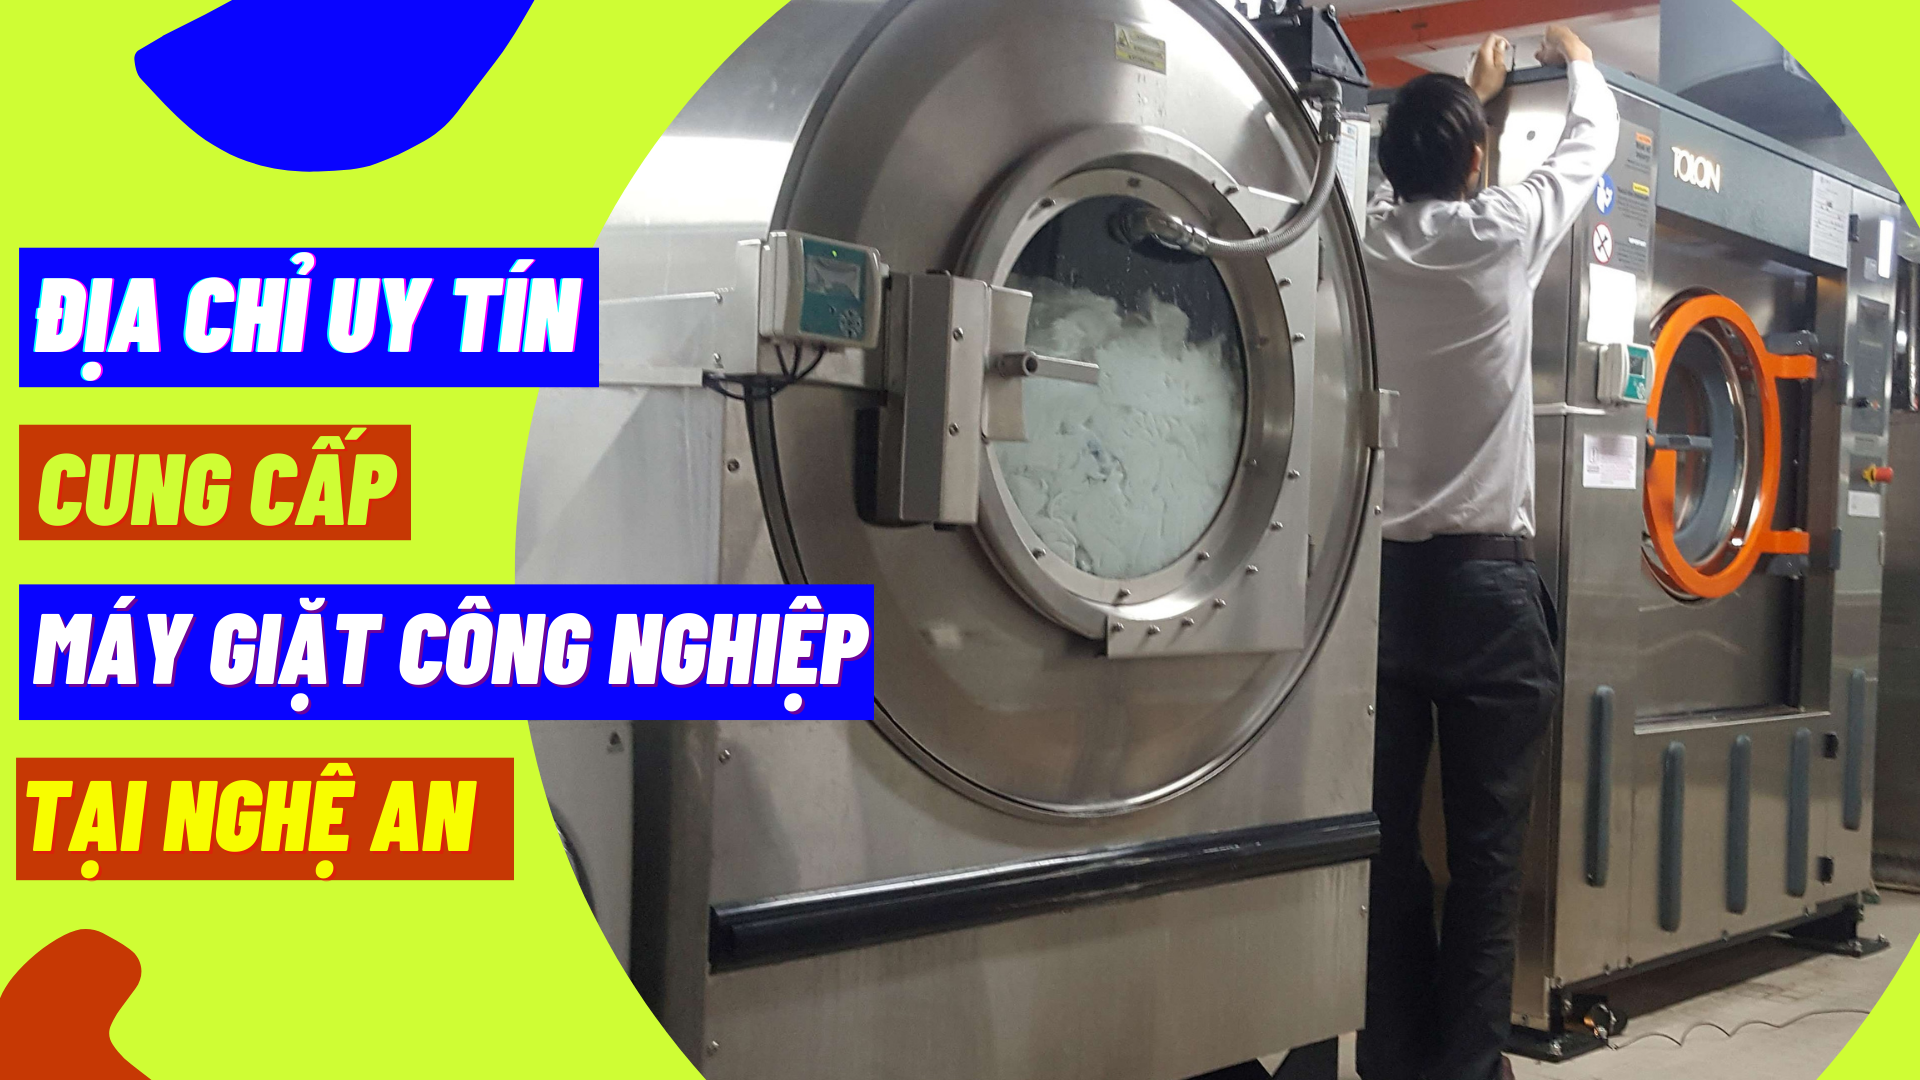 Địa chỉ uy tín cung cấp máy giặt công nghiệp tại Nghệ An